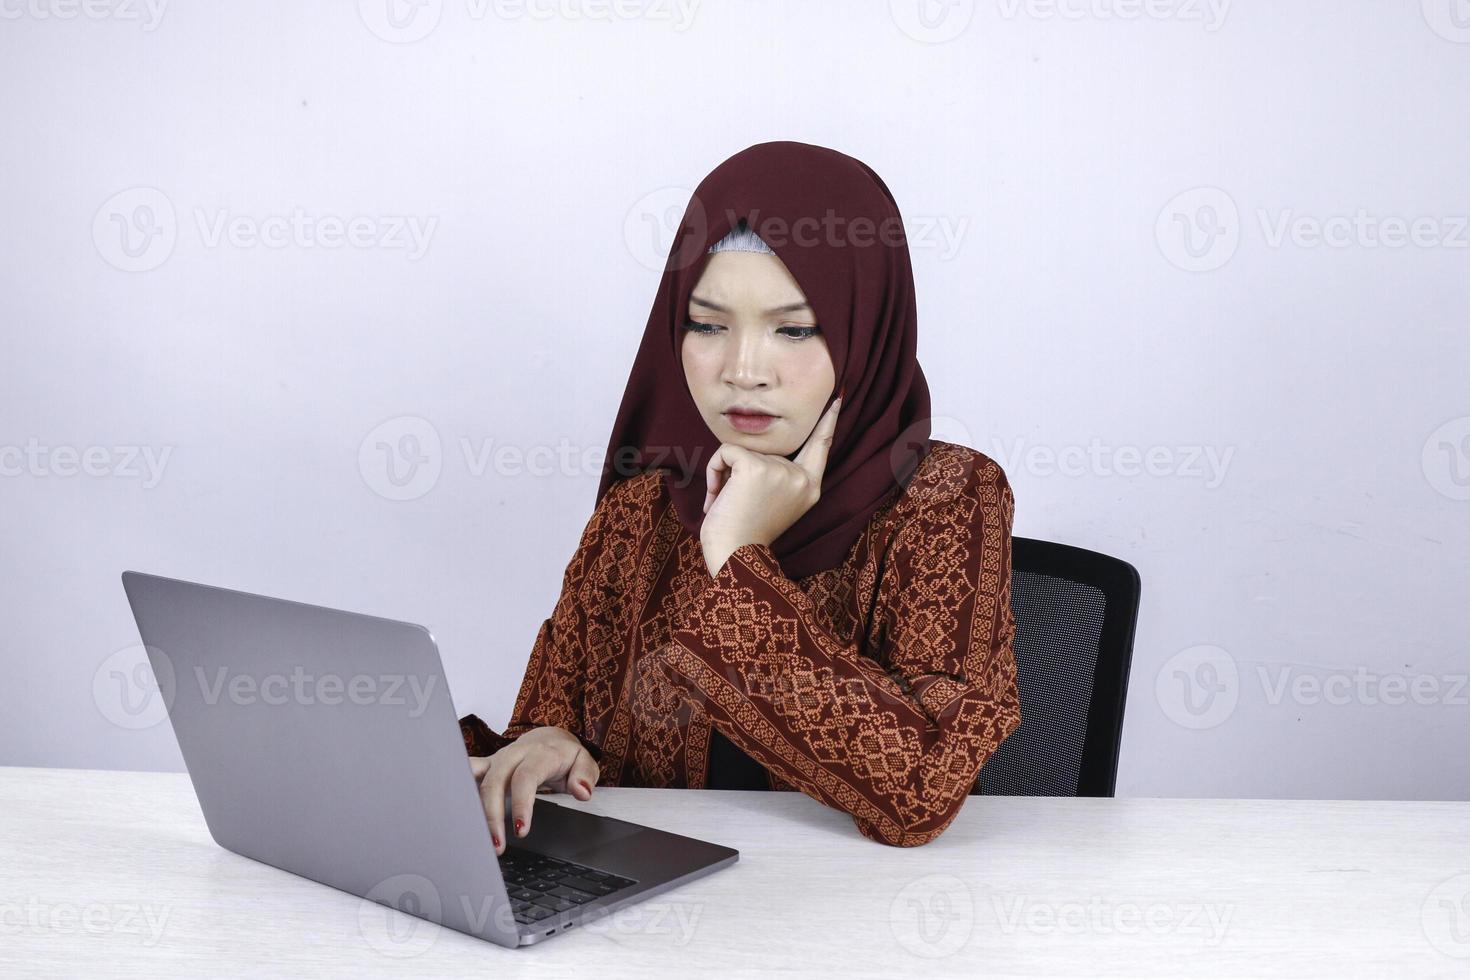 la joven islámica asiática tiene una mirada seria con un gesto de pensamiento con la mano en la cara en la parte delantera de la computadora portátil. foto